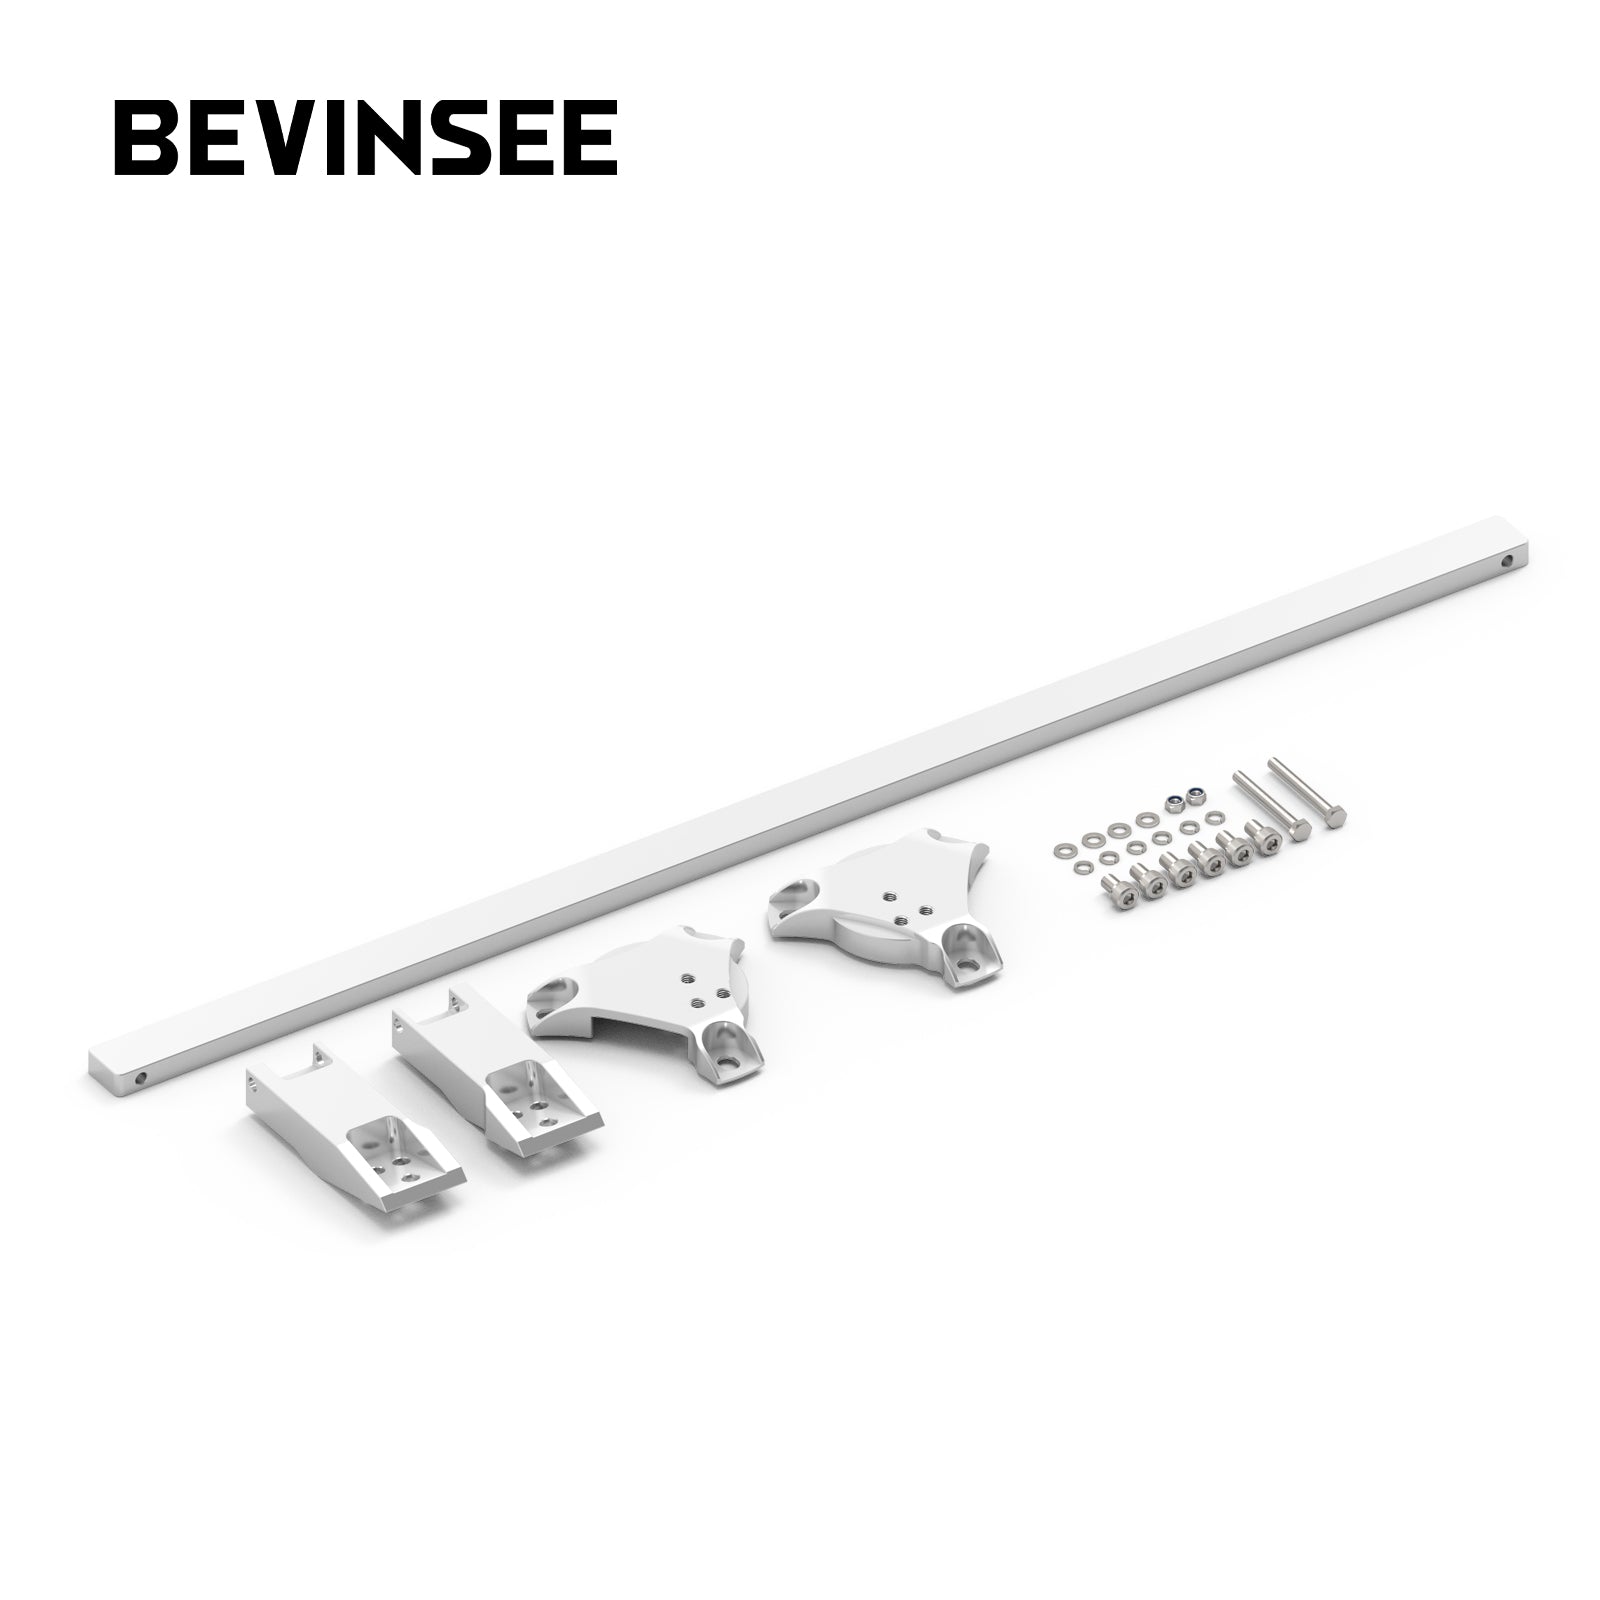 BEVINSEE Front Strut Brace Bar for BMW E46 323 325 328 330 M3 1999-2006